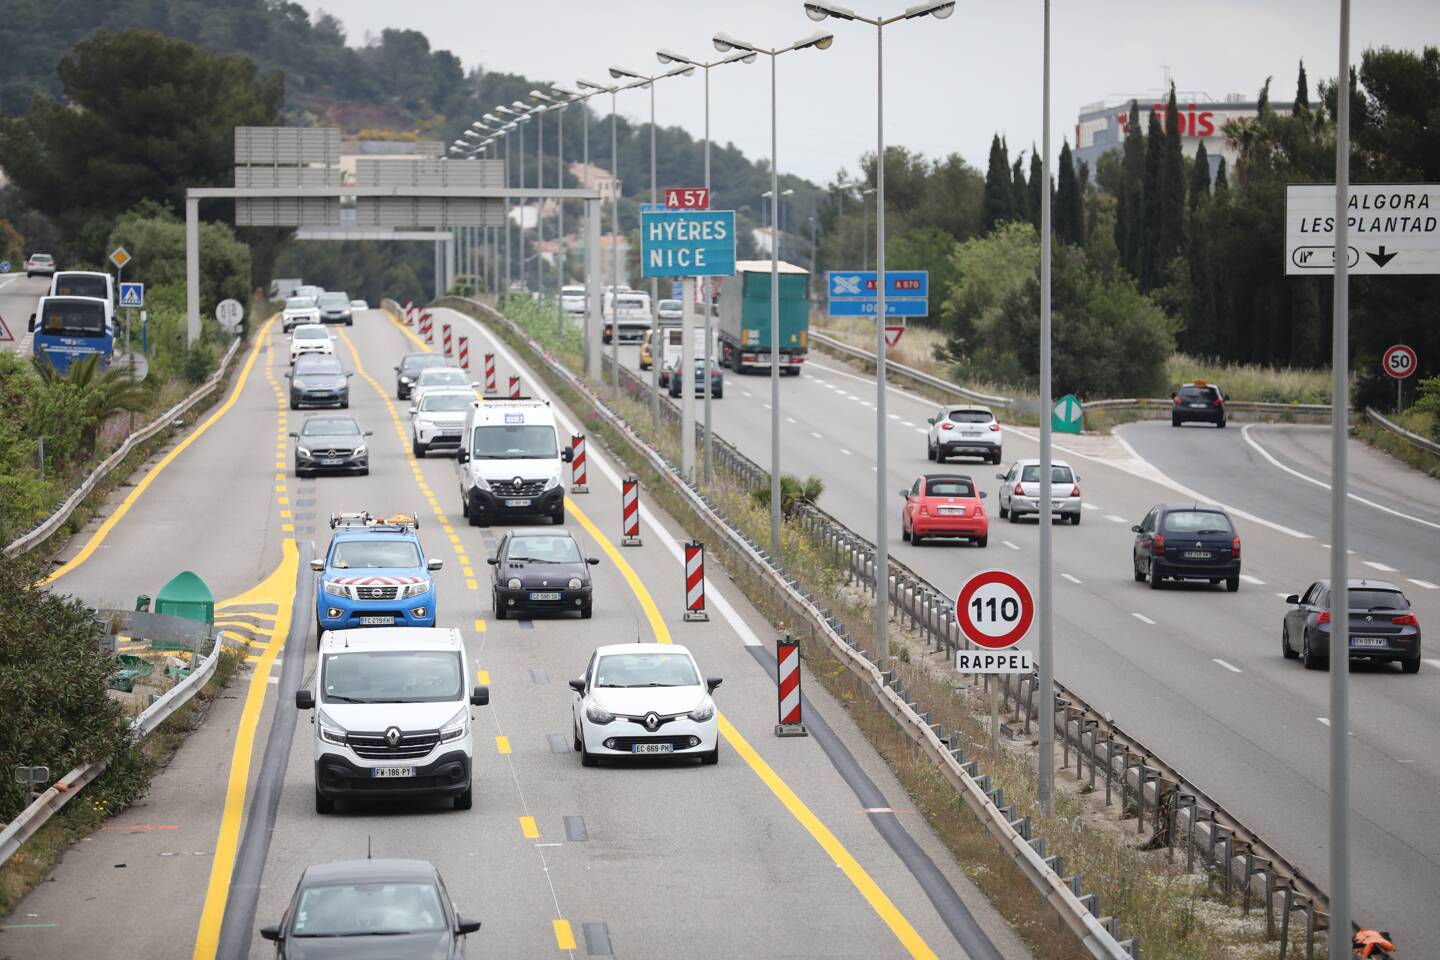 Le projet consiste à passer à 2x3 voies entre le carrefour des Oliviers (extrémité Est du tunnel de Toulon) et l’échangeur de Pierre Ronde.